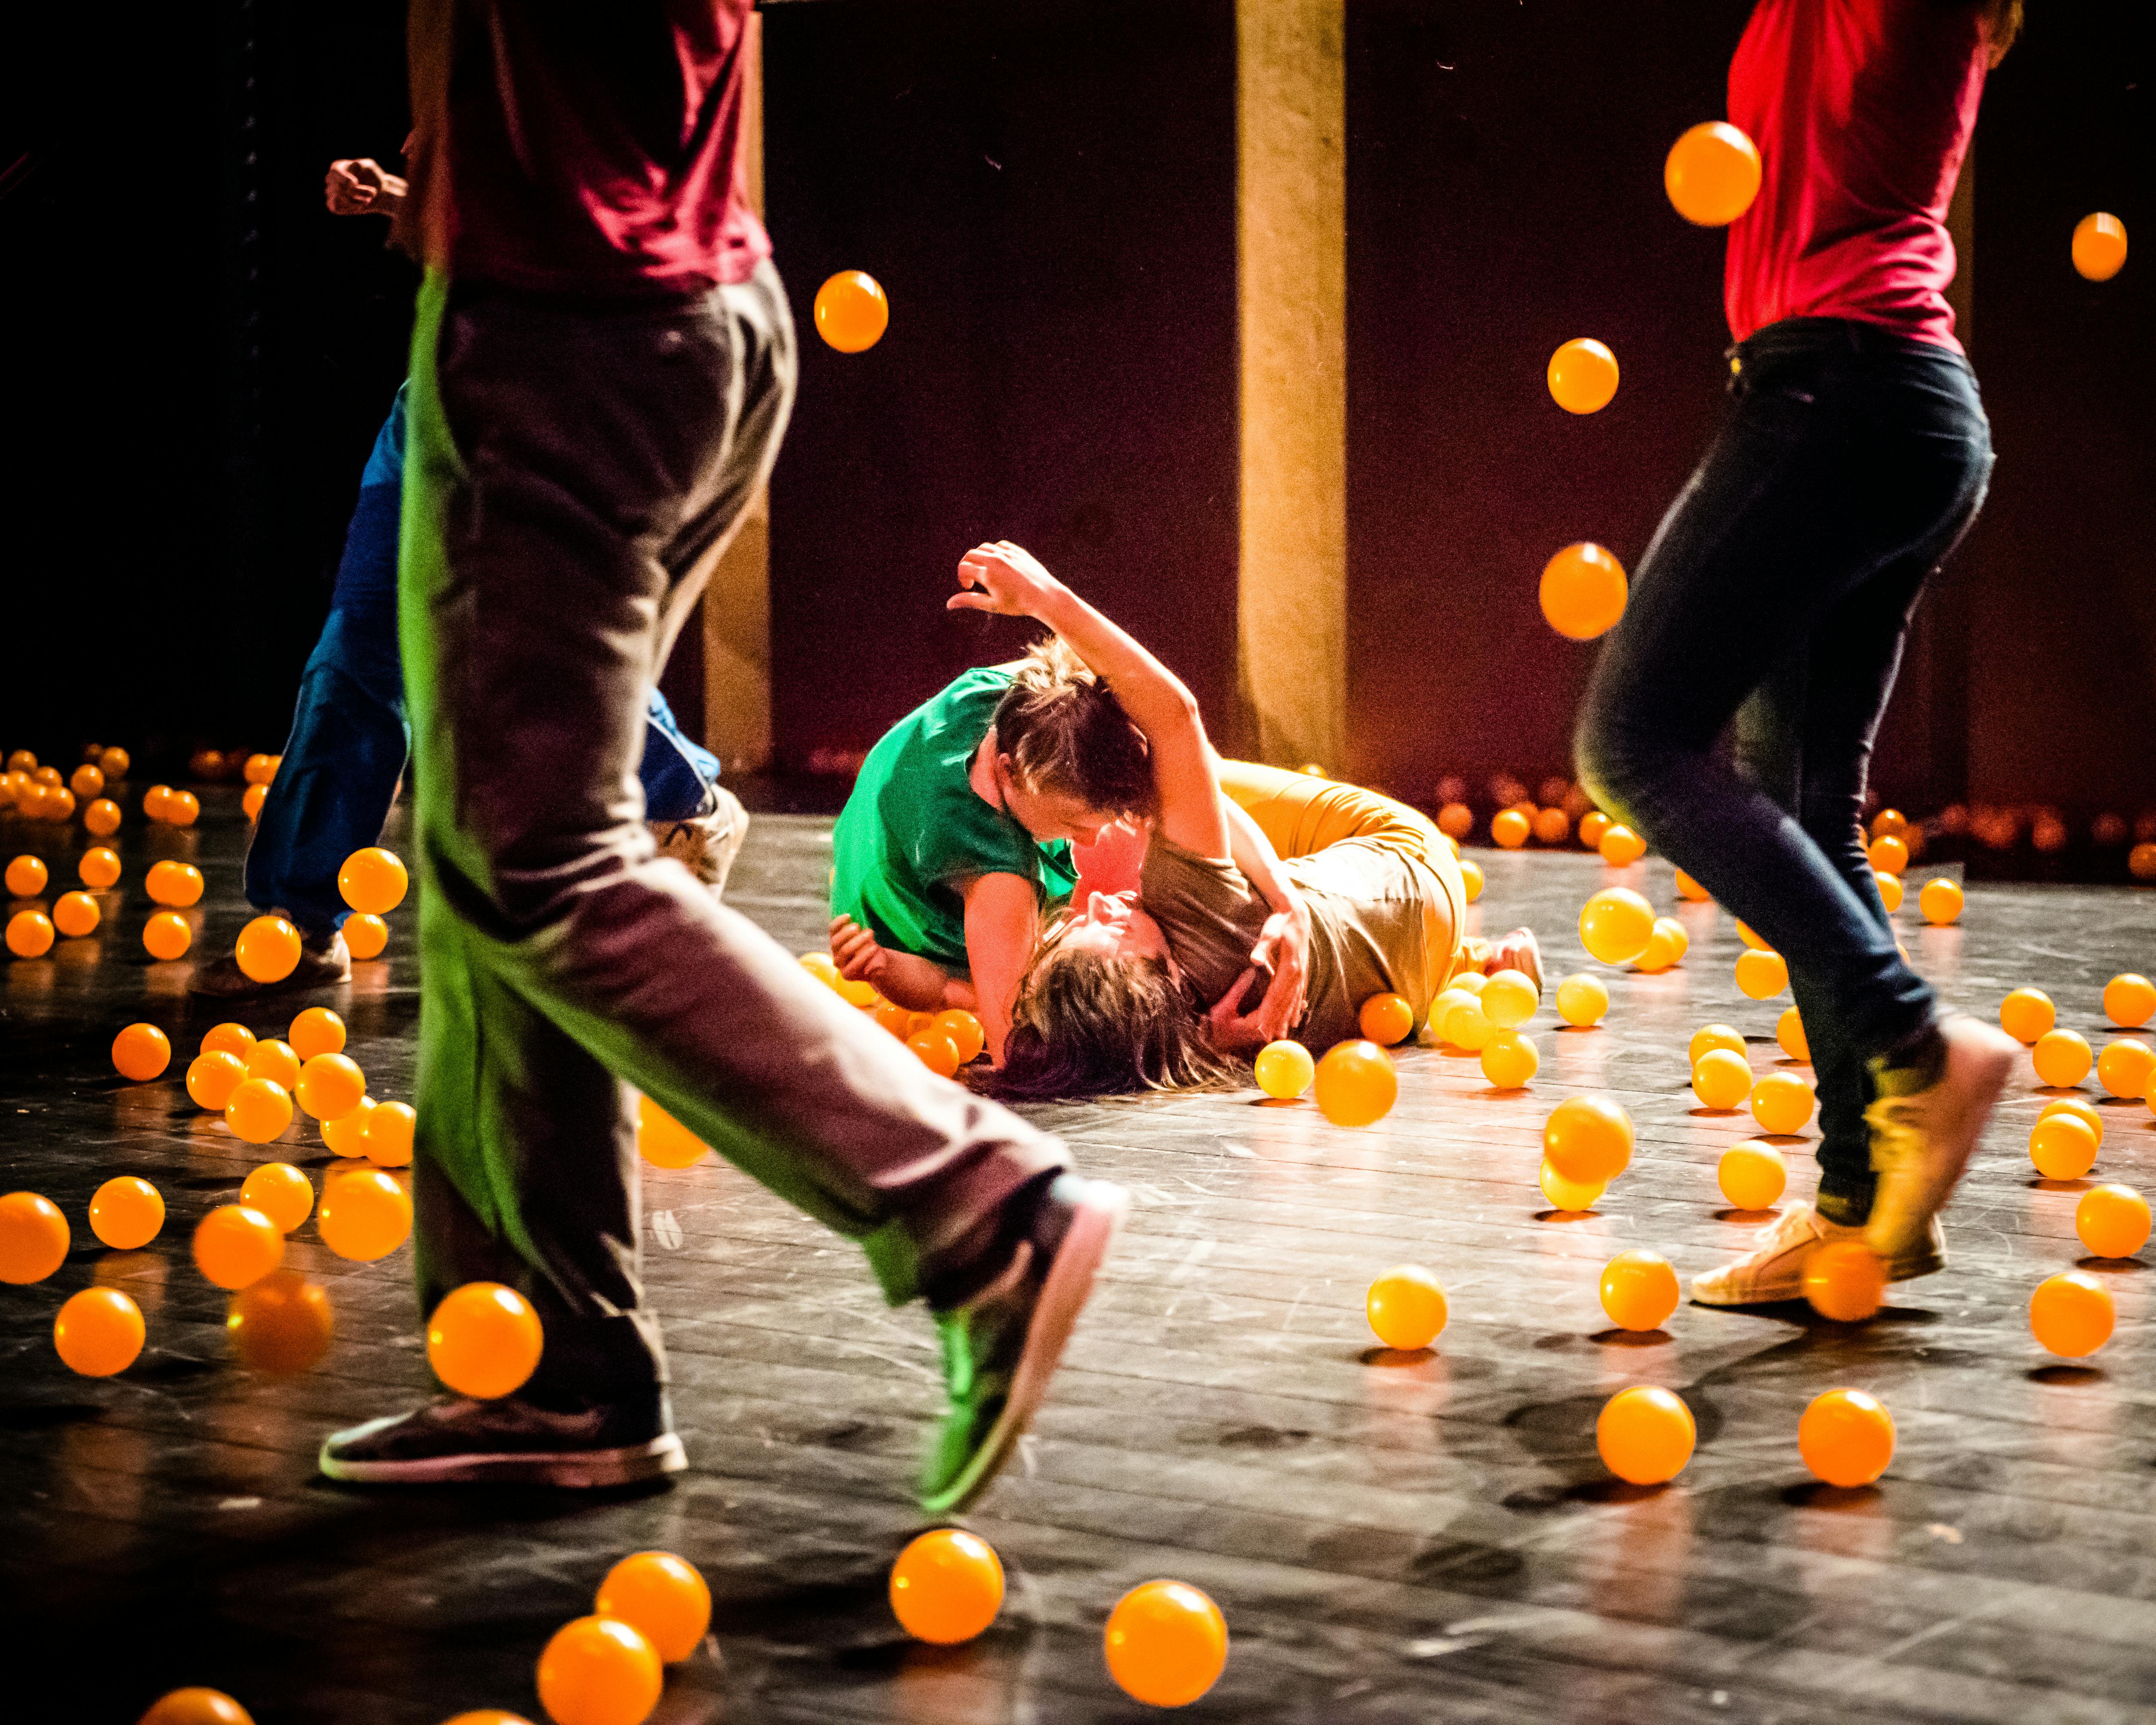 Gli artisti si esibiscono sul palco contornati da palline arancioni